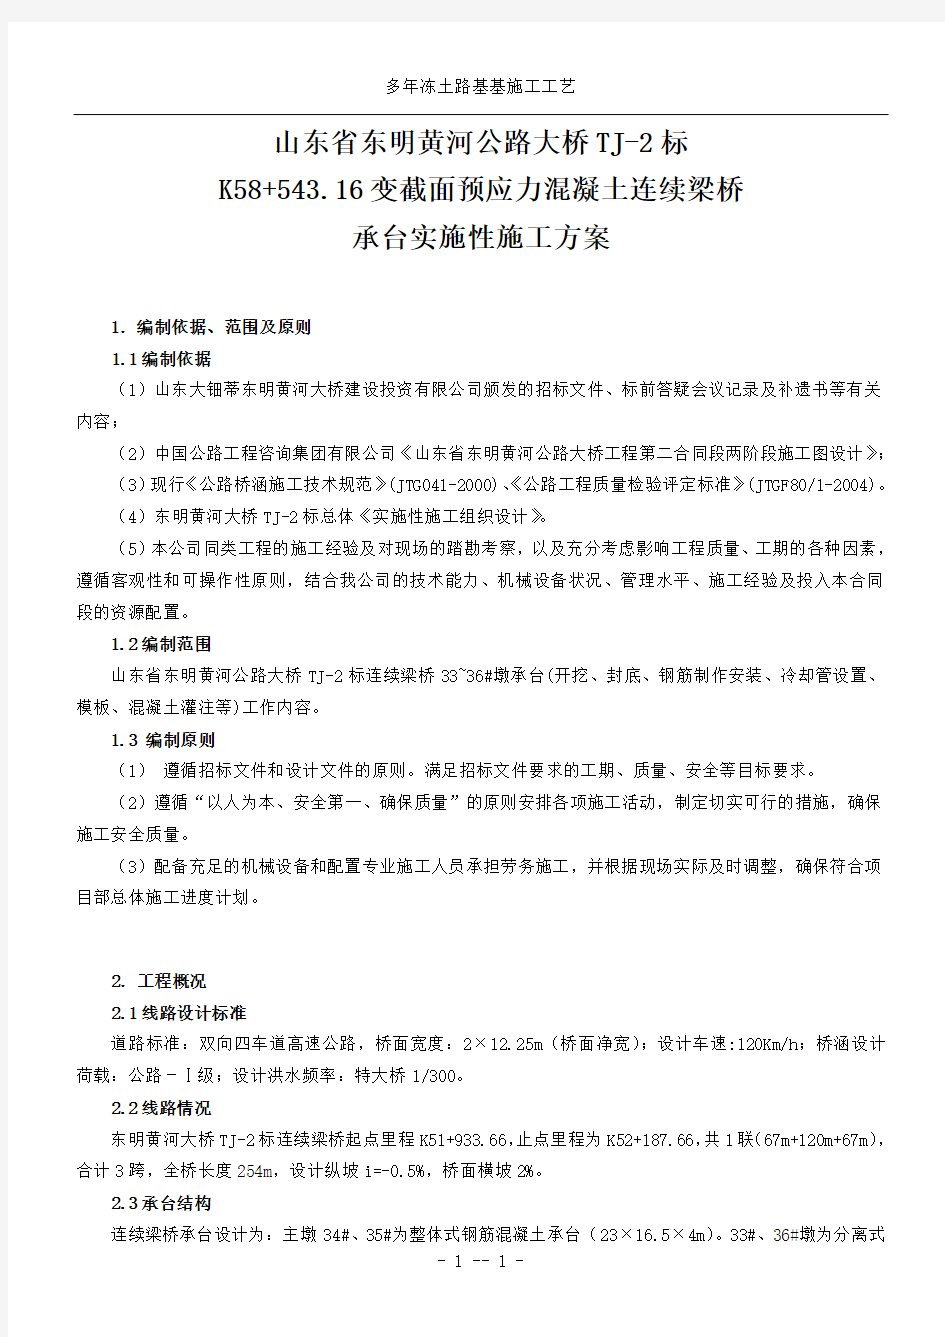 2019年东明黄河大桥TJ-2标3连续梁承台施工方案(1)